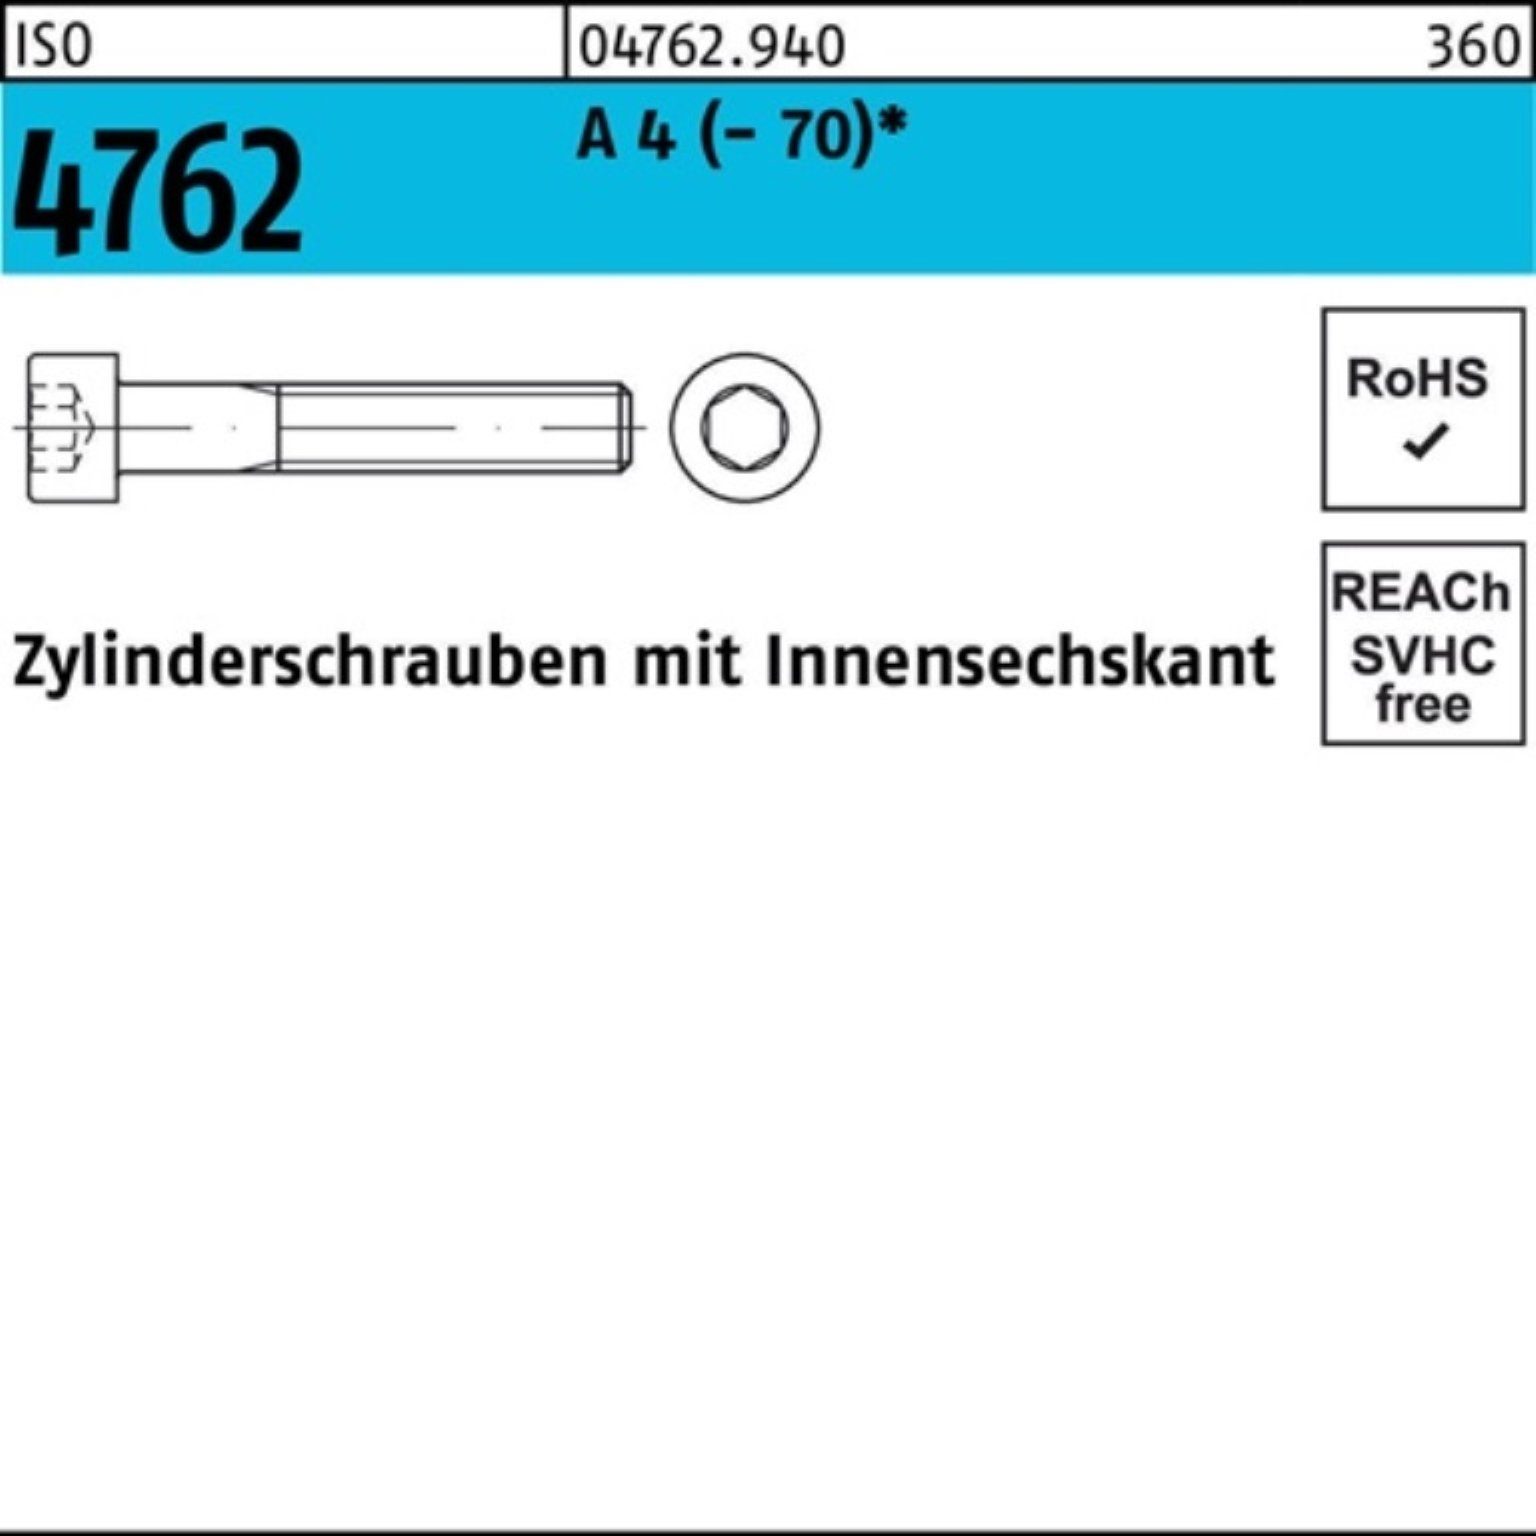 Innen-6kt Stück Zylinderschraube M3x 8 IS ISO Pack 100 100er 4 A Zylinderschraube 4762 Reyher